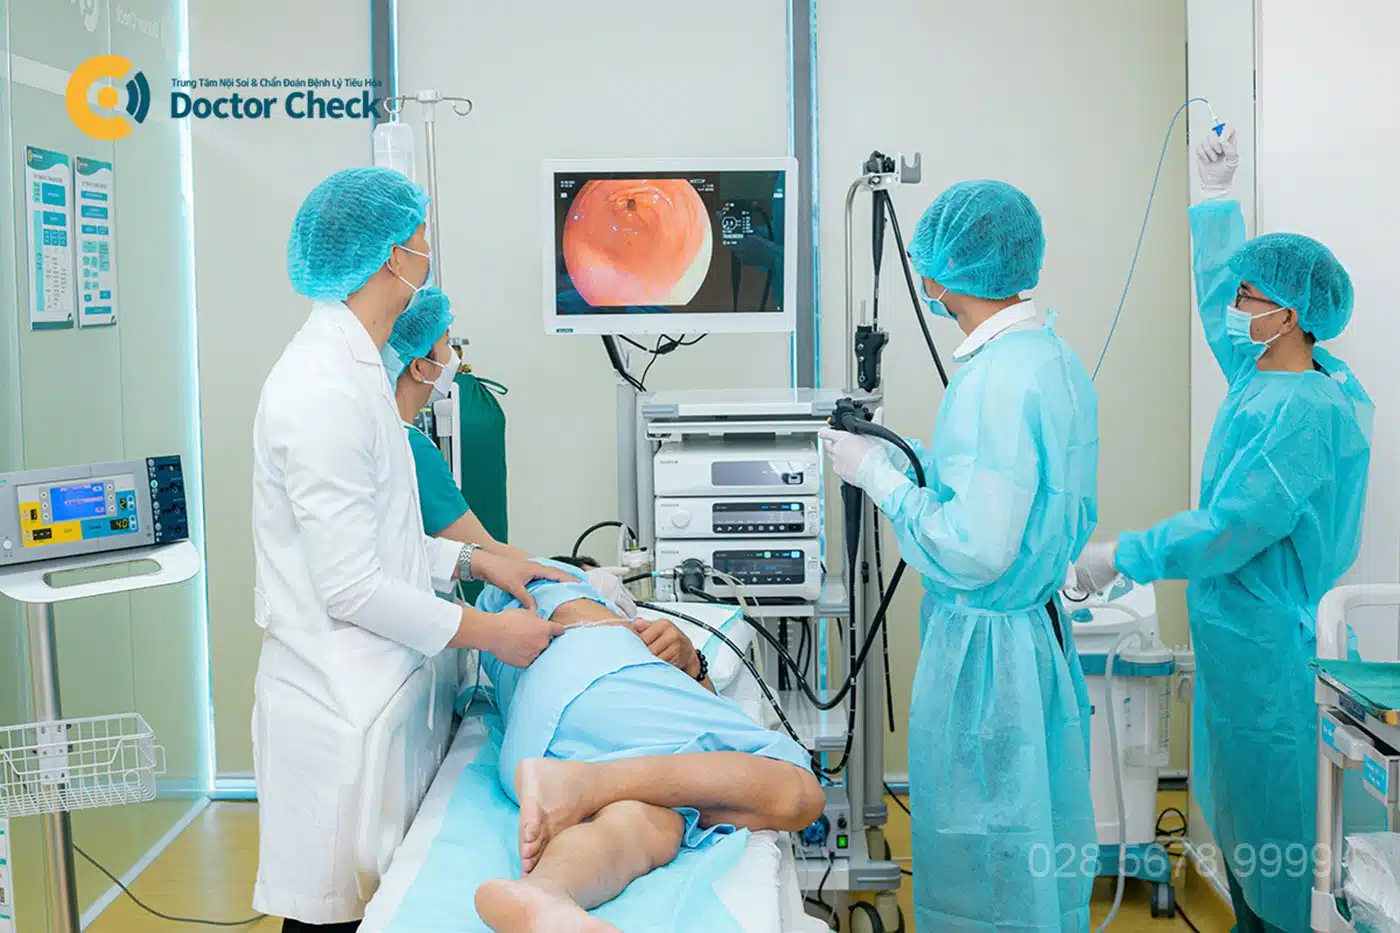 Doctor Check trang bị thiết bị hiện đại, hỗ trợ tối đa bác sĩ chẩn đoán và điều trị bệnh